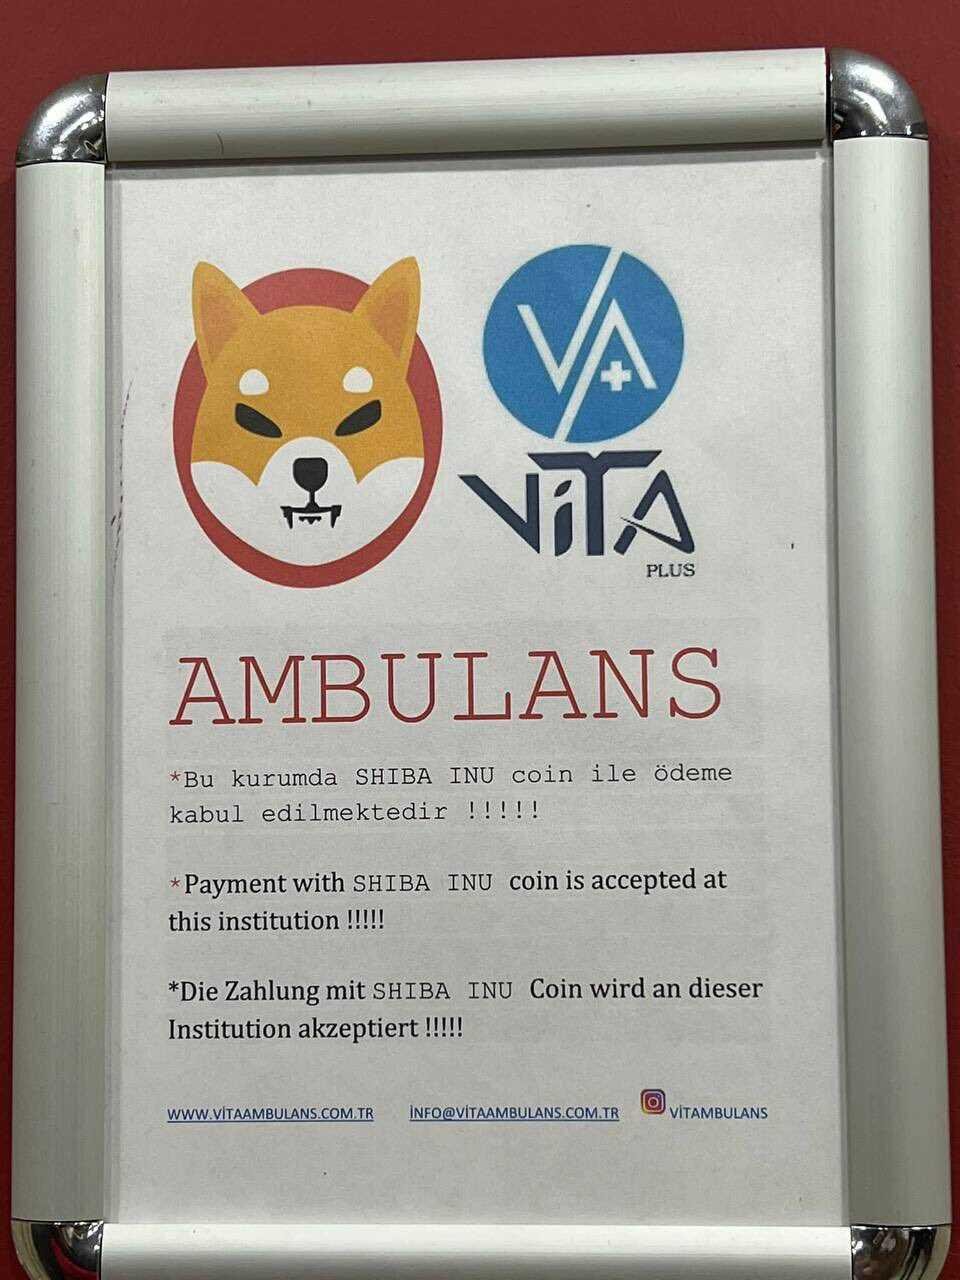 Cartaz no escritório da Vita Plus avisa que a empresa aceita pagamento em Shiba Inu